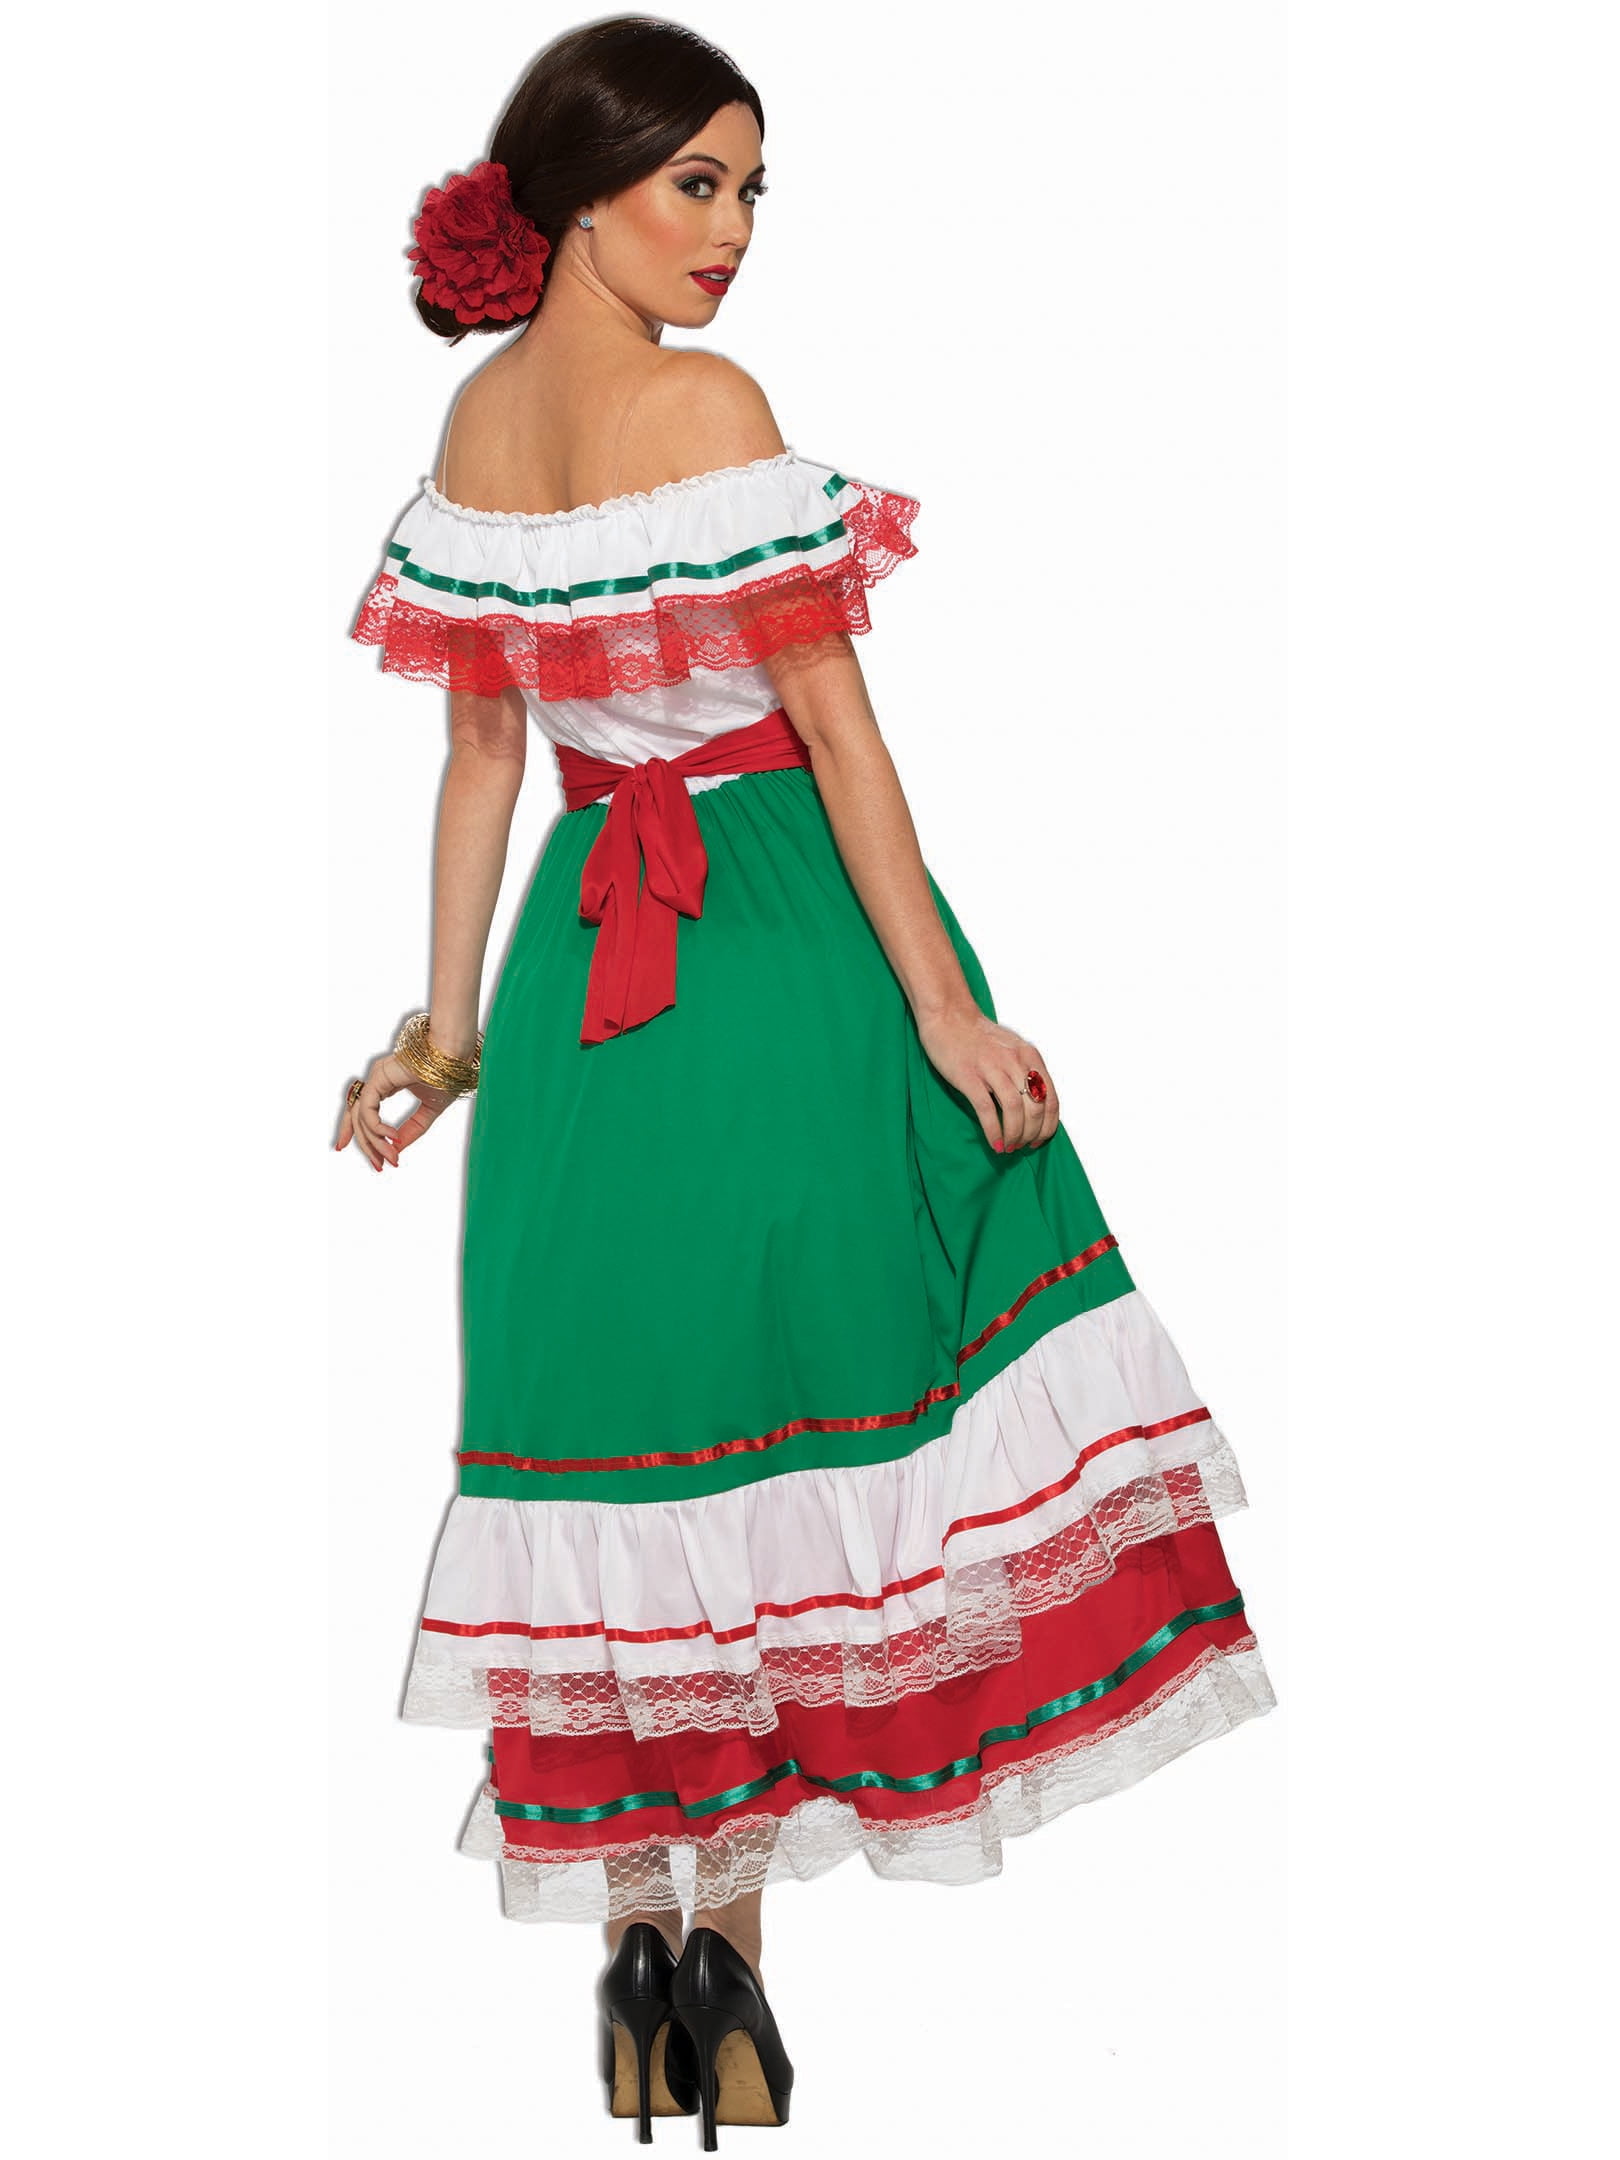 Women's Fiesta Dress - Walmart.com